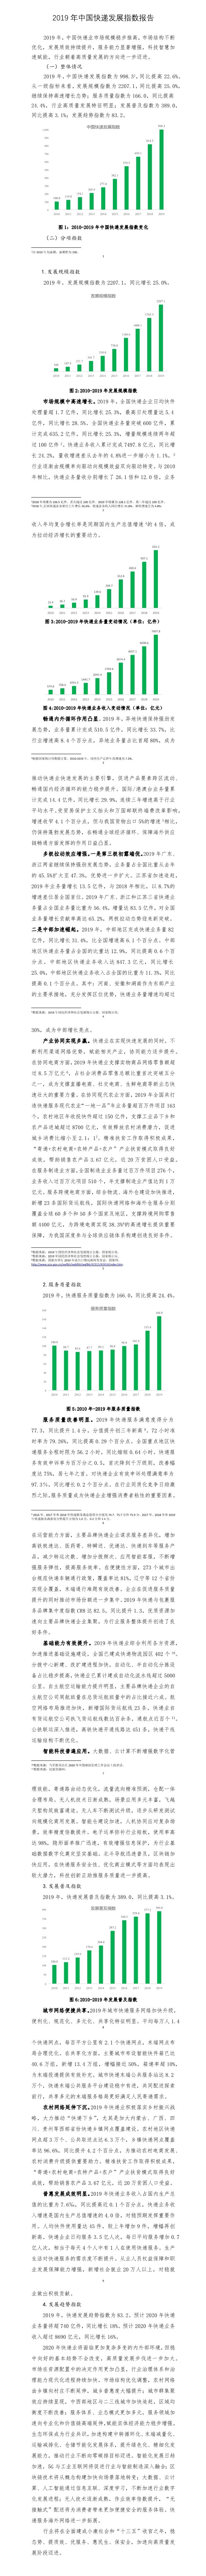 2019年中国快递发展指数报告.jpg